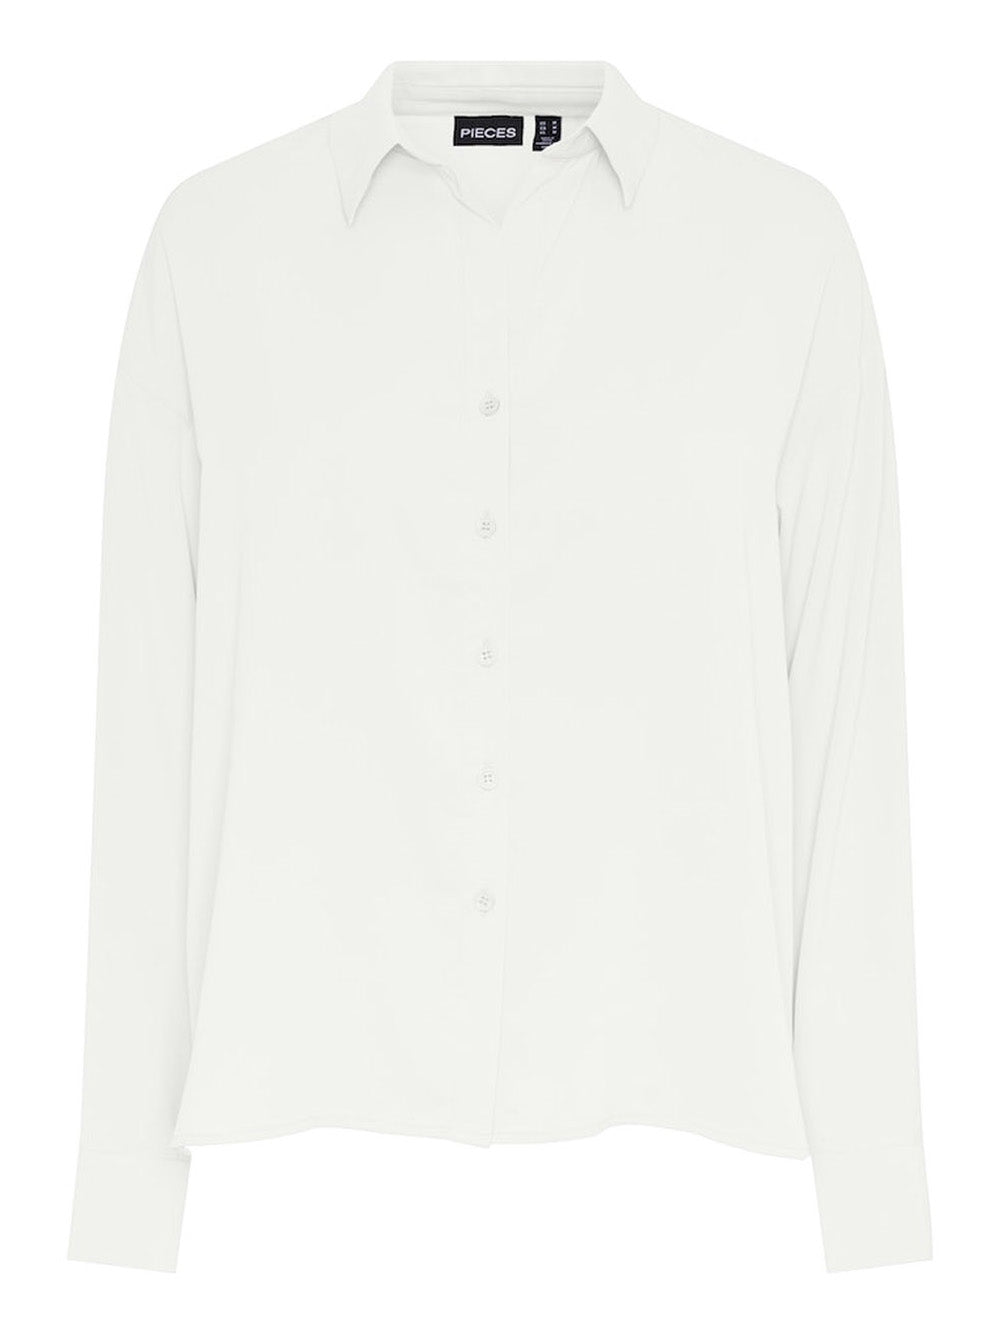 PIECES Camicia Donna - Bianco modello 17146430